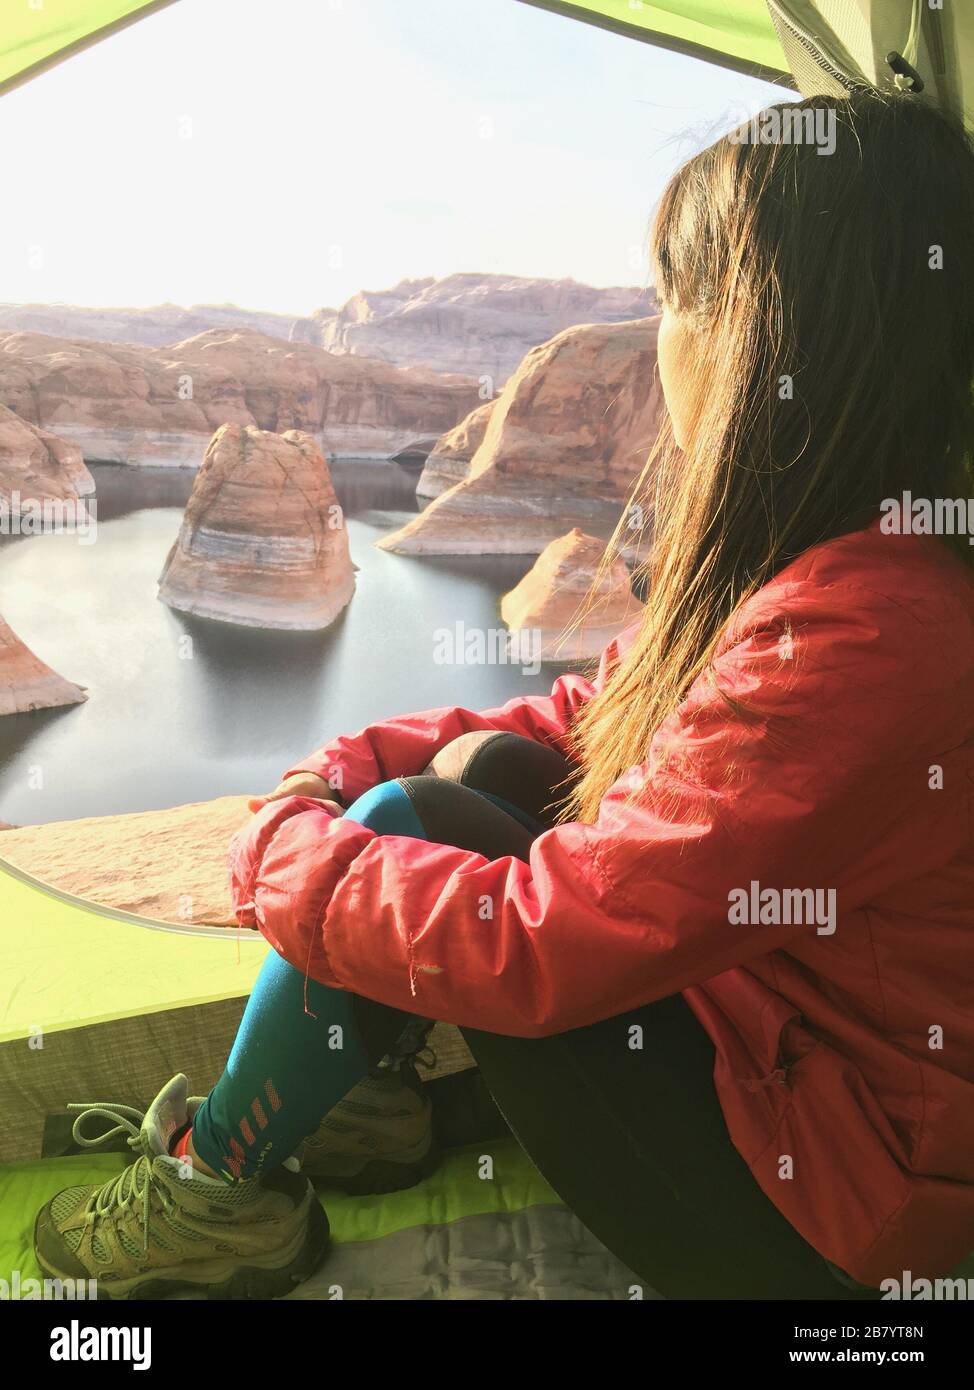 Woman backpacking camping at Reflection Canyon in Utah USA Stock Photo